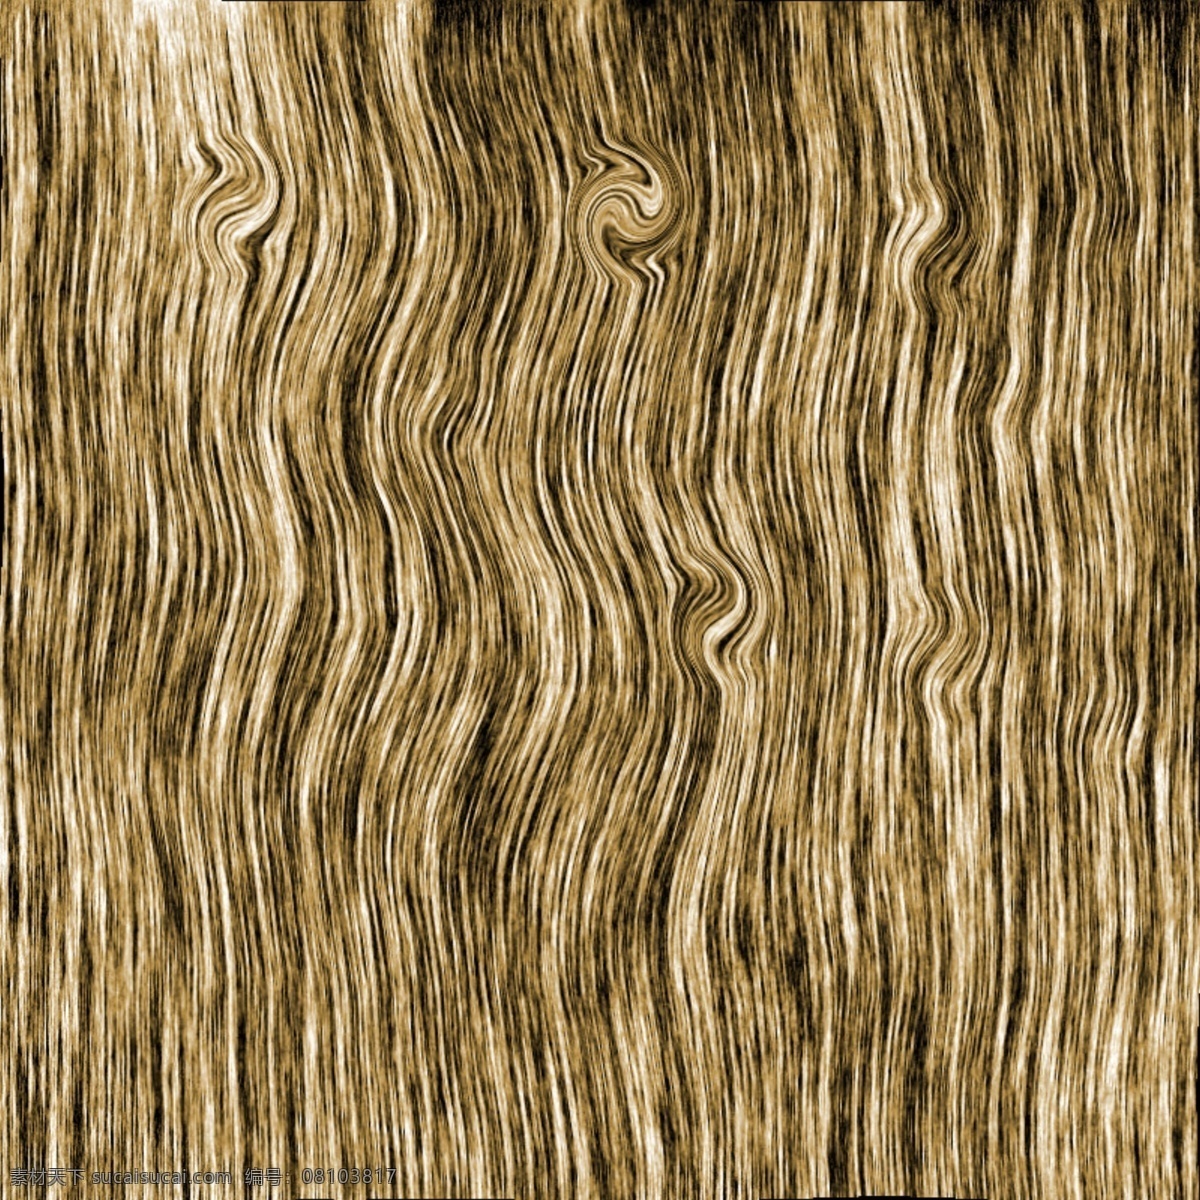 树木纹理 纹理图 带色纹理 木质纹理 木纹 木头